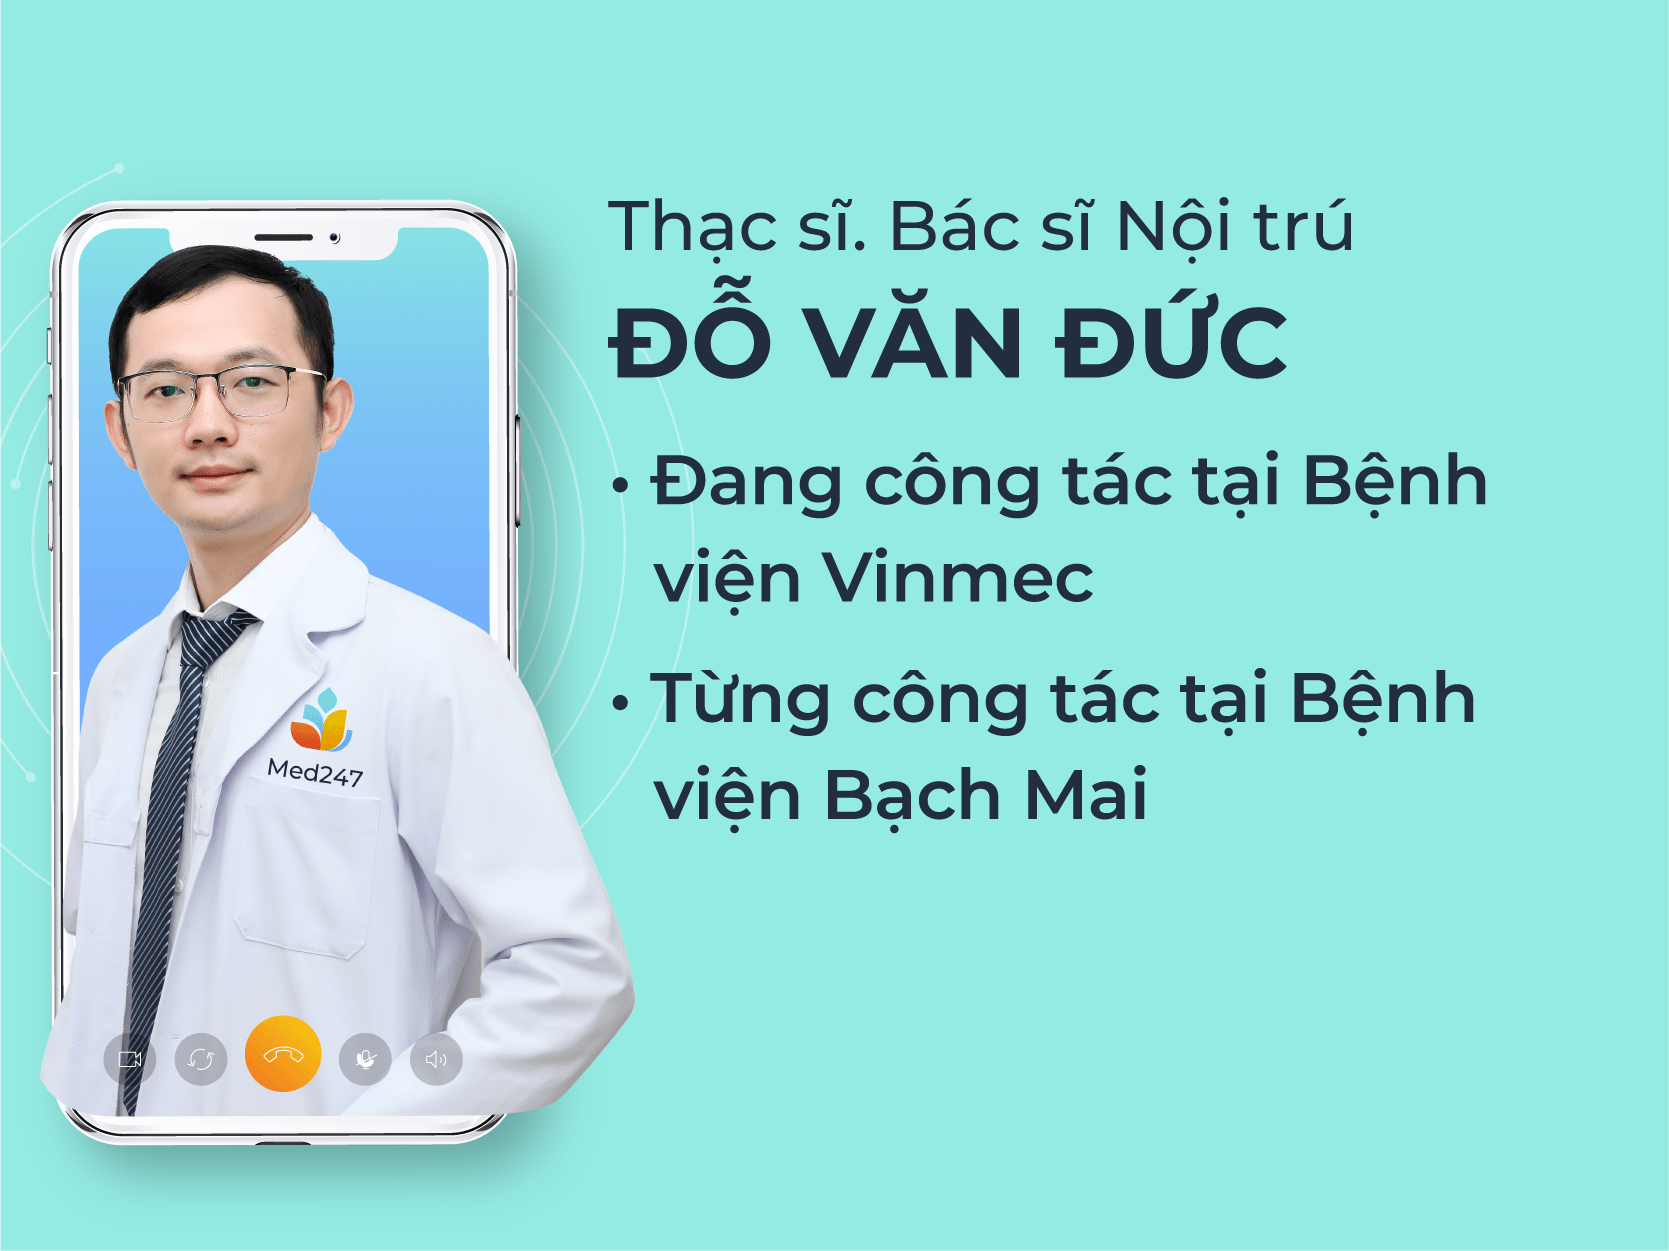 Thạc sĩ, Bác sĩ Nội trú Đỗ Văn Đức - Med247